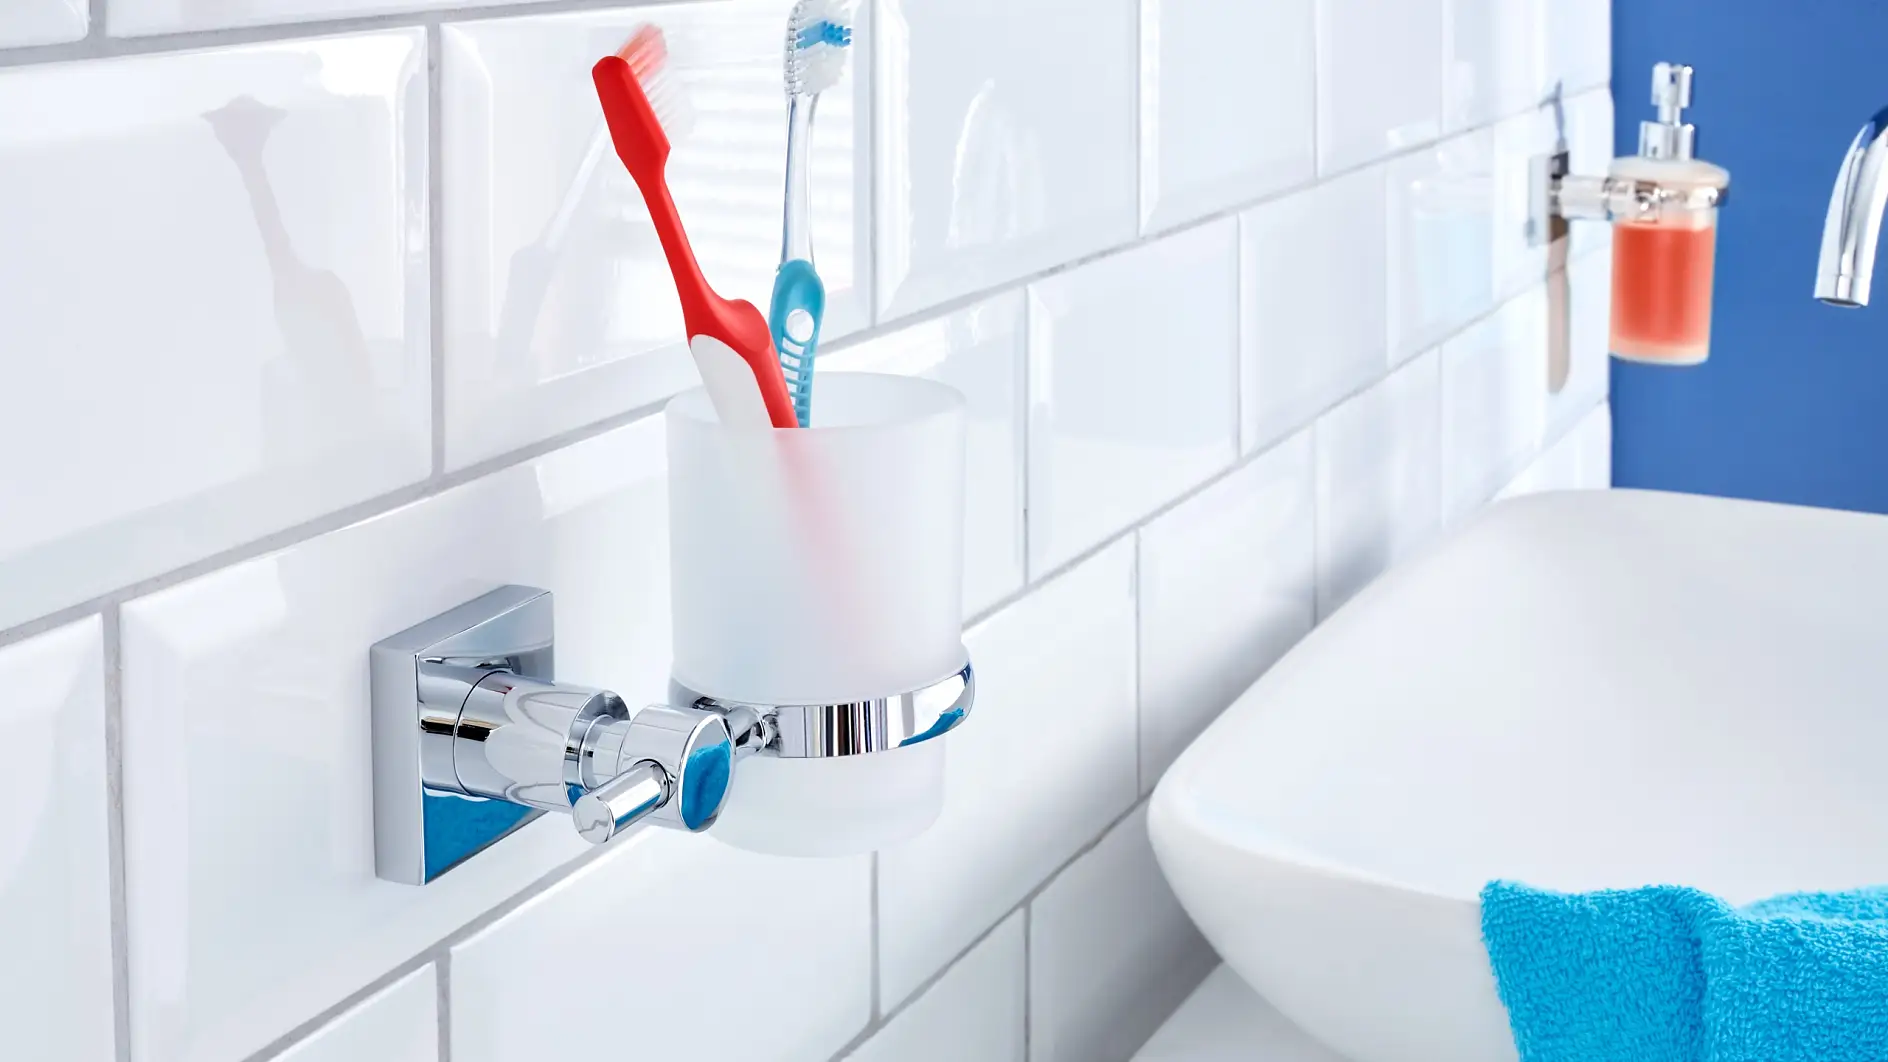 Evita que el vaso del cepillo de dientes ocupe espacio en el lavabo. Ponlo donde mejor se vea y en el lugar donde tiene que estar.